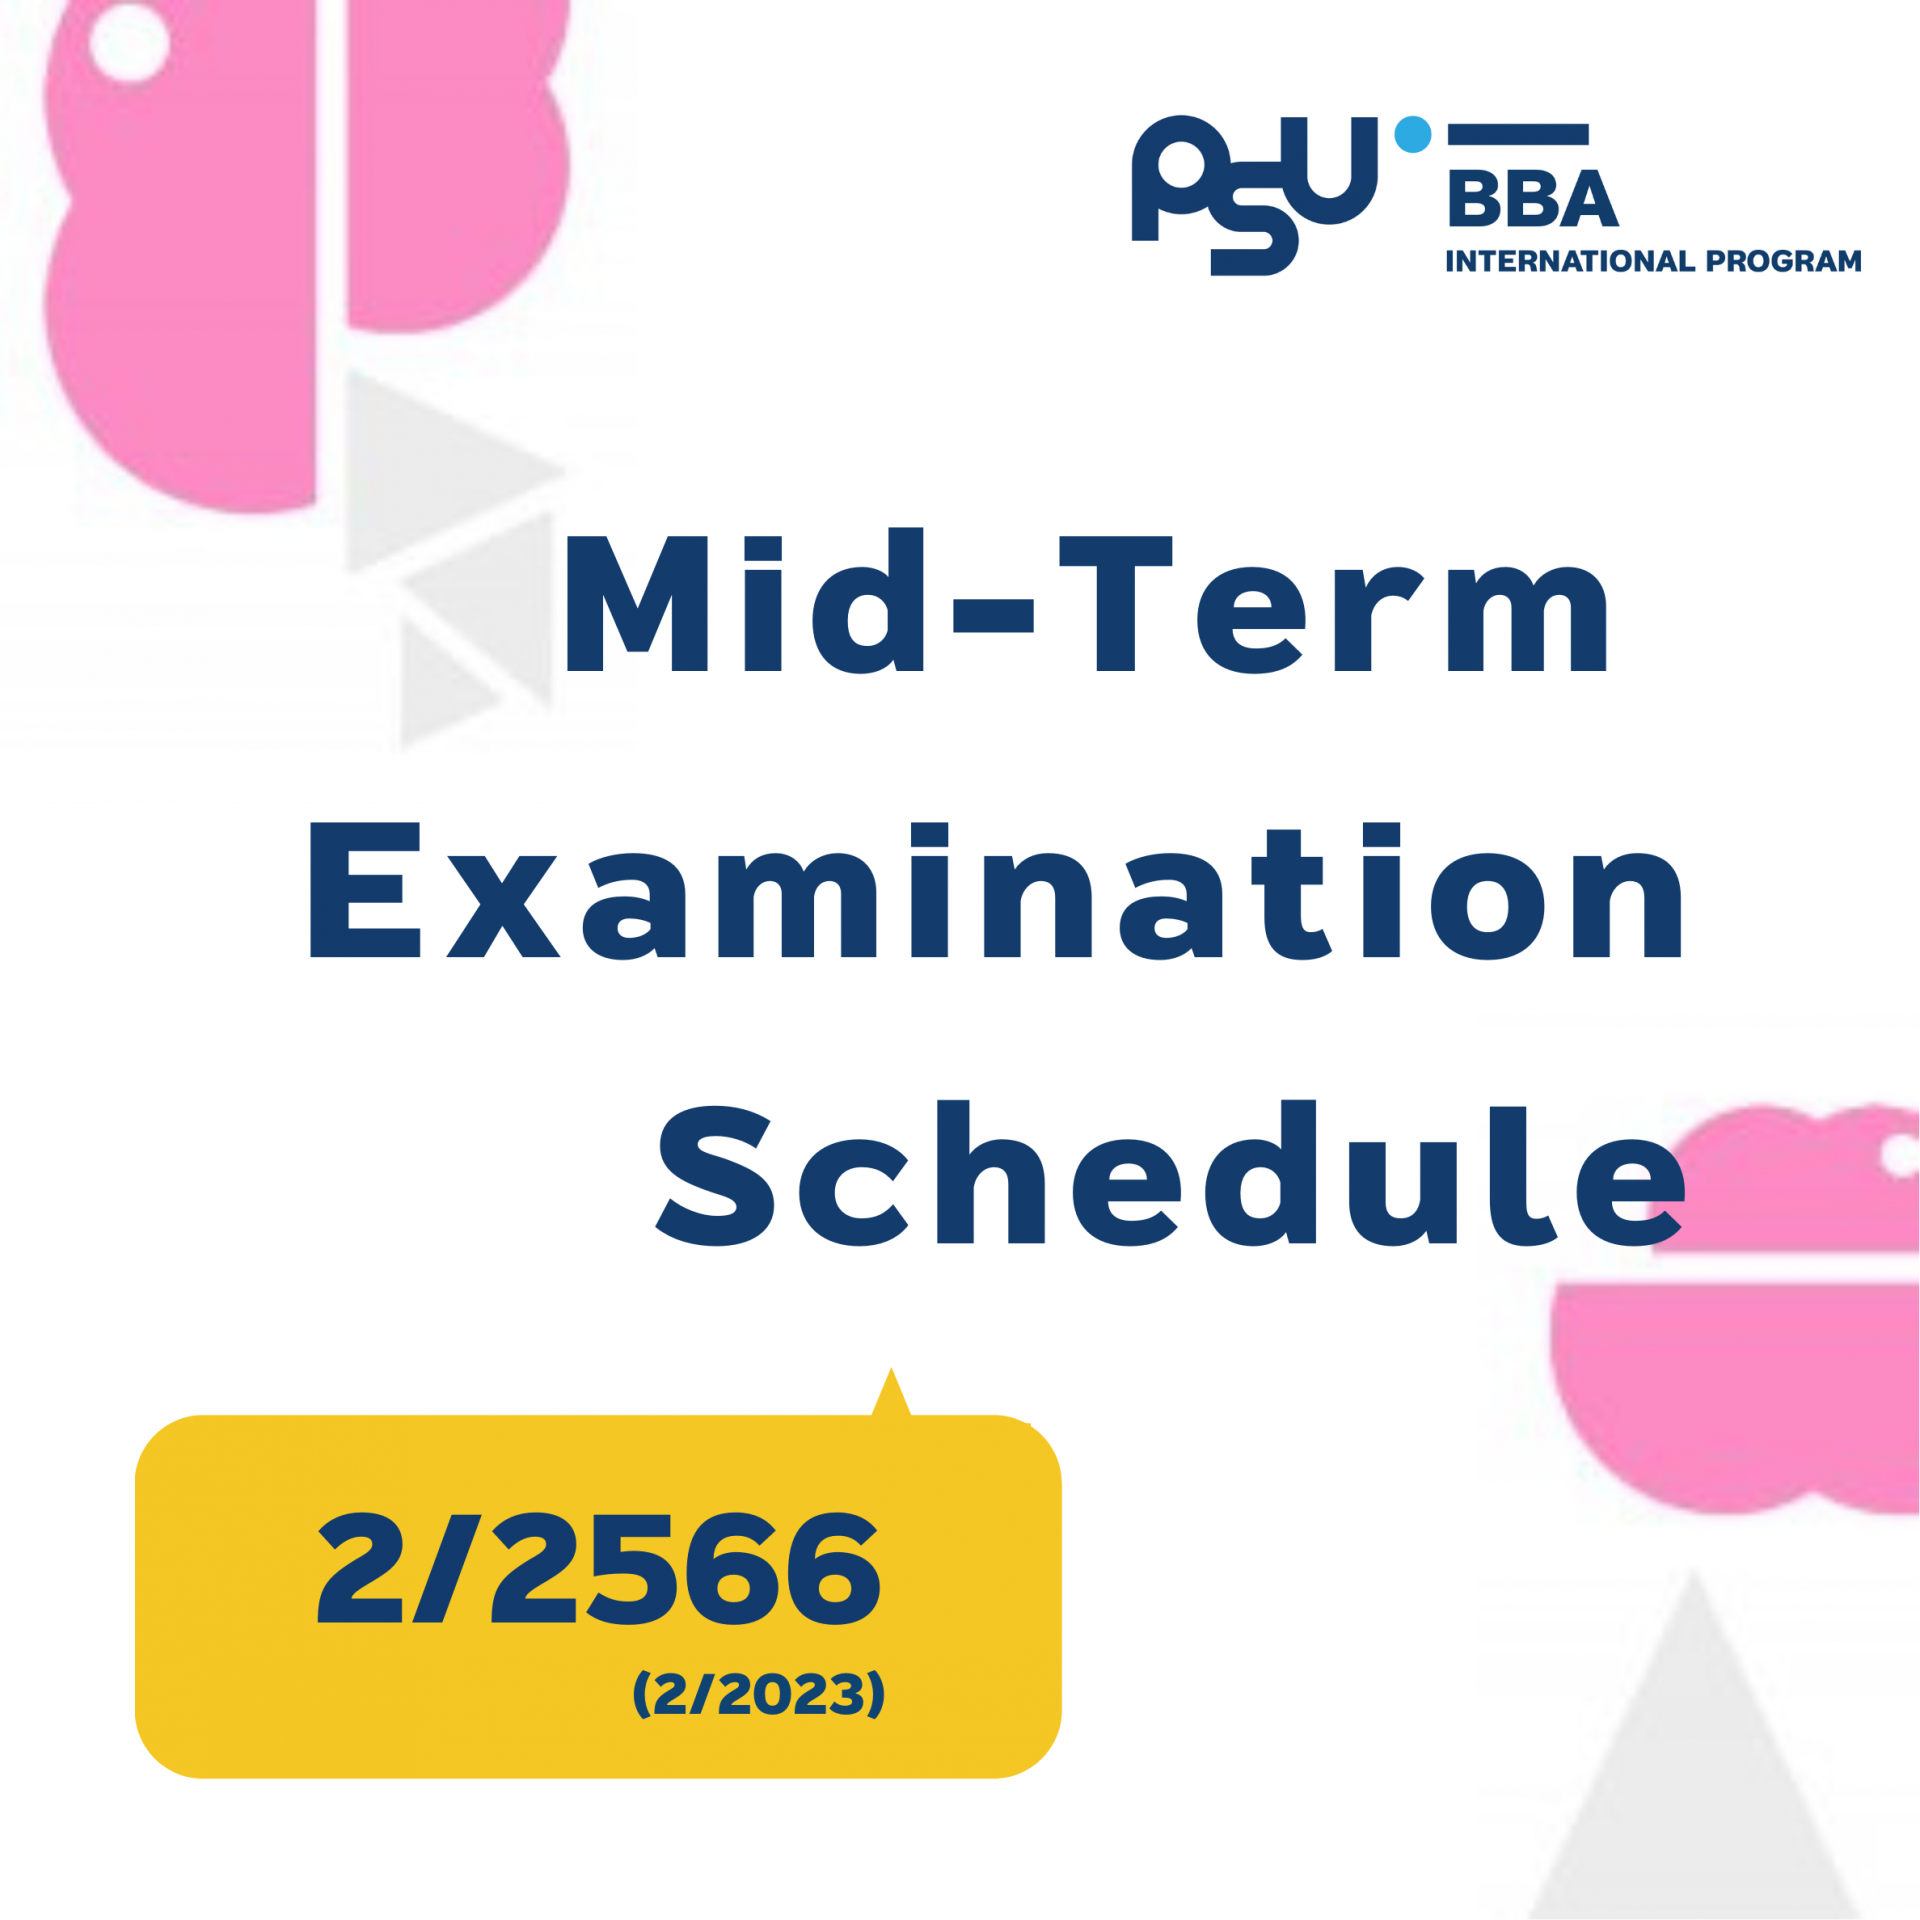 Midterm Examination Schedule 2/2566 (2/2023)